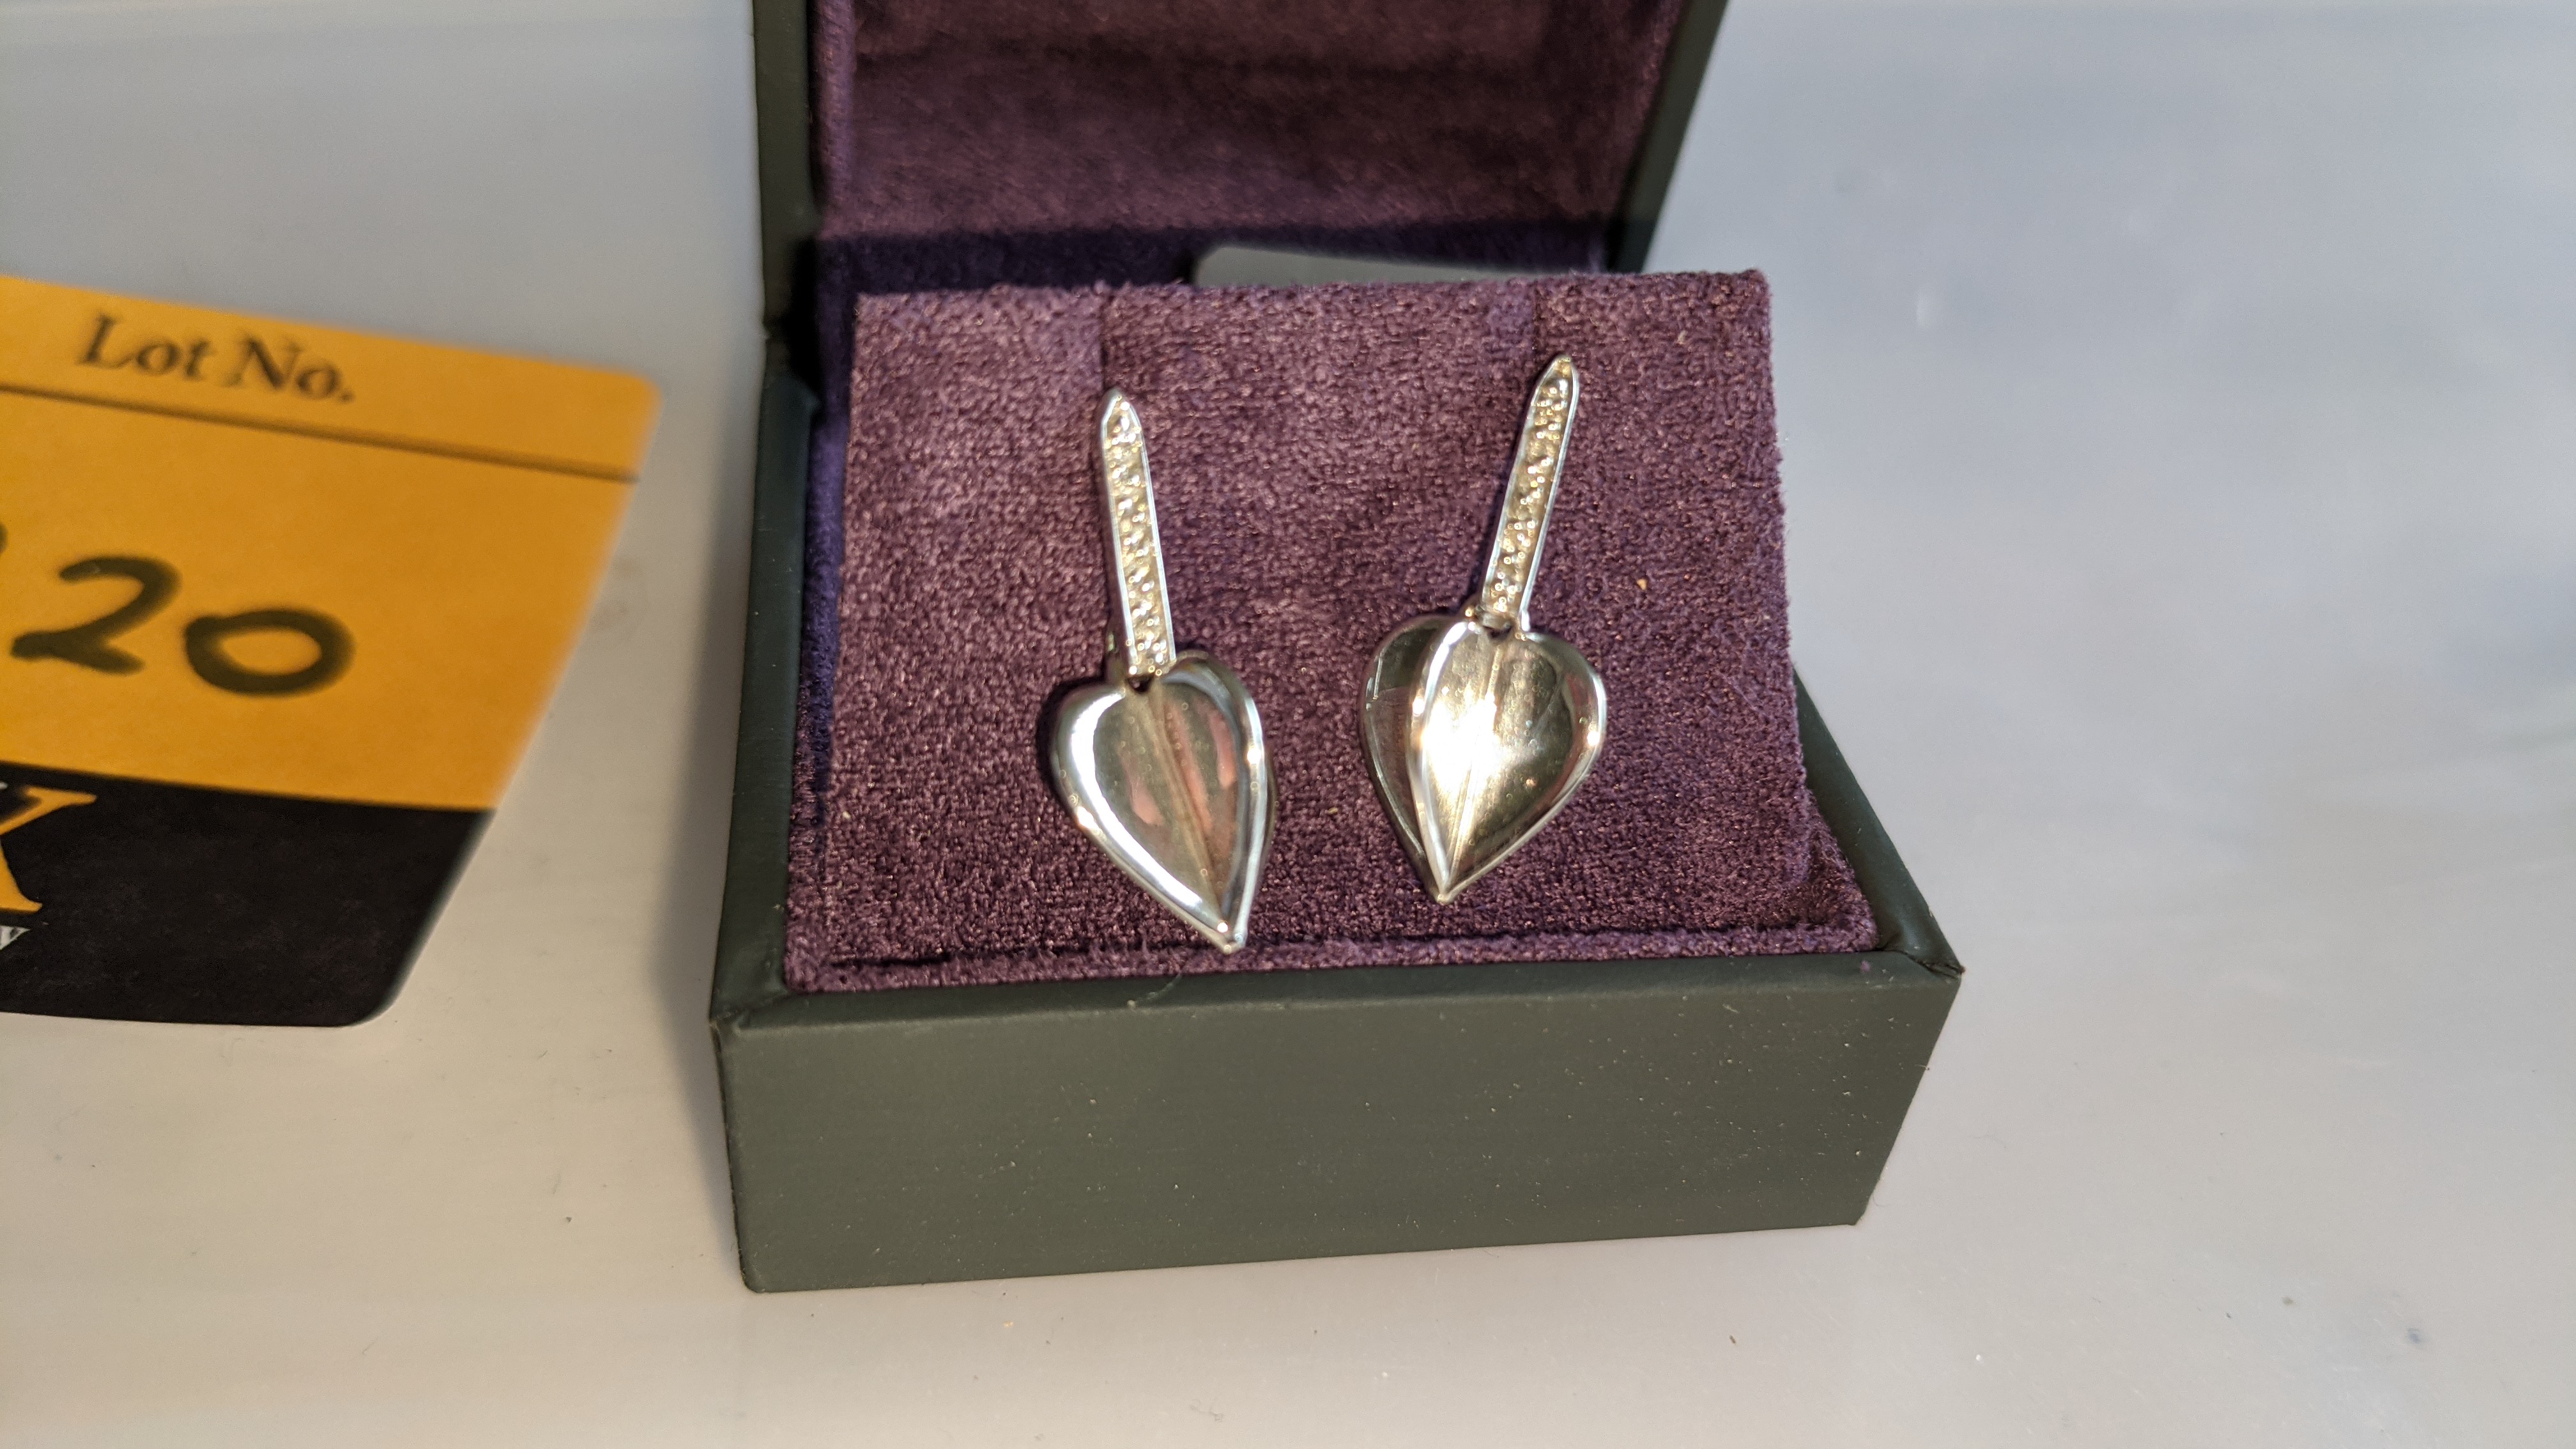 Pair of earrings, retail price £196 - Image 2 of 11